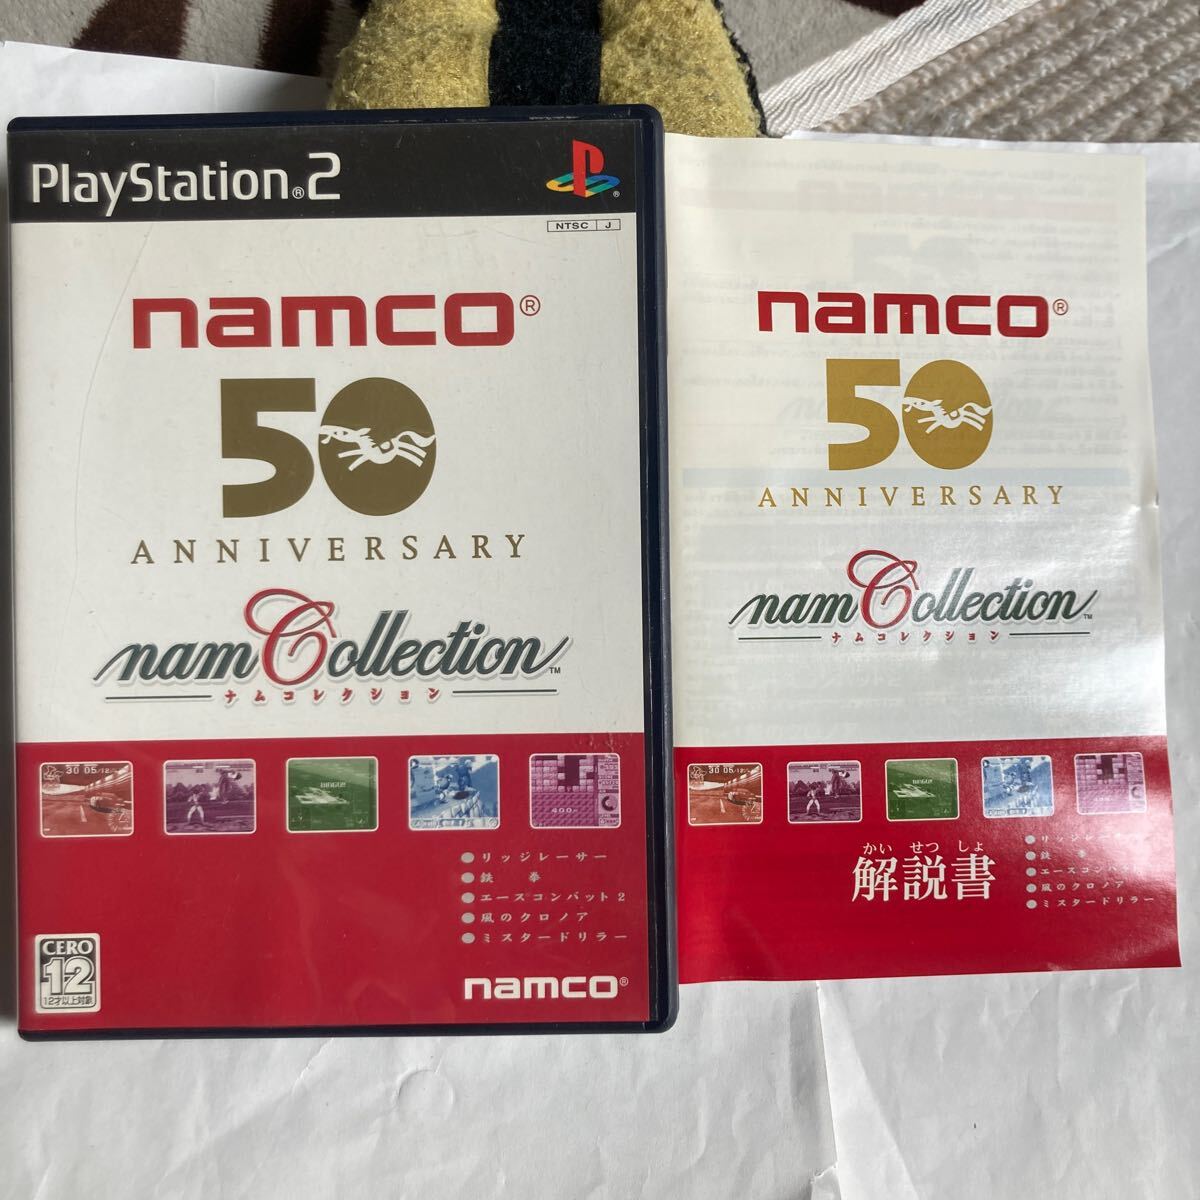 送料無料 PS2 プレイステーション2 ナムコレクション namCollection PlayStation2 プレステ2 namco 50 ANNIVERSARY namco ナムコ PS2ソフト